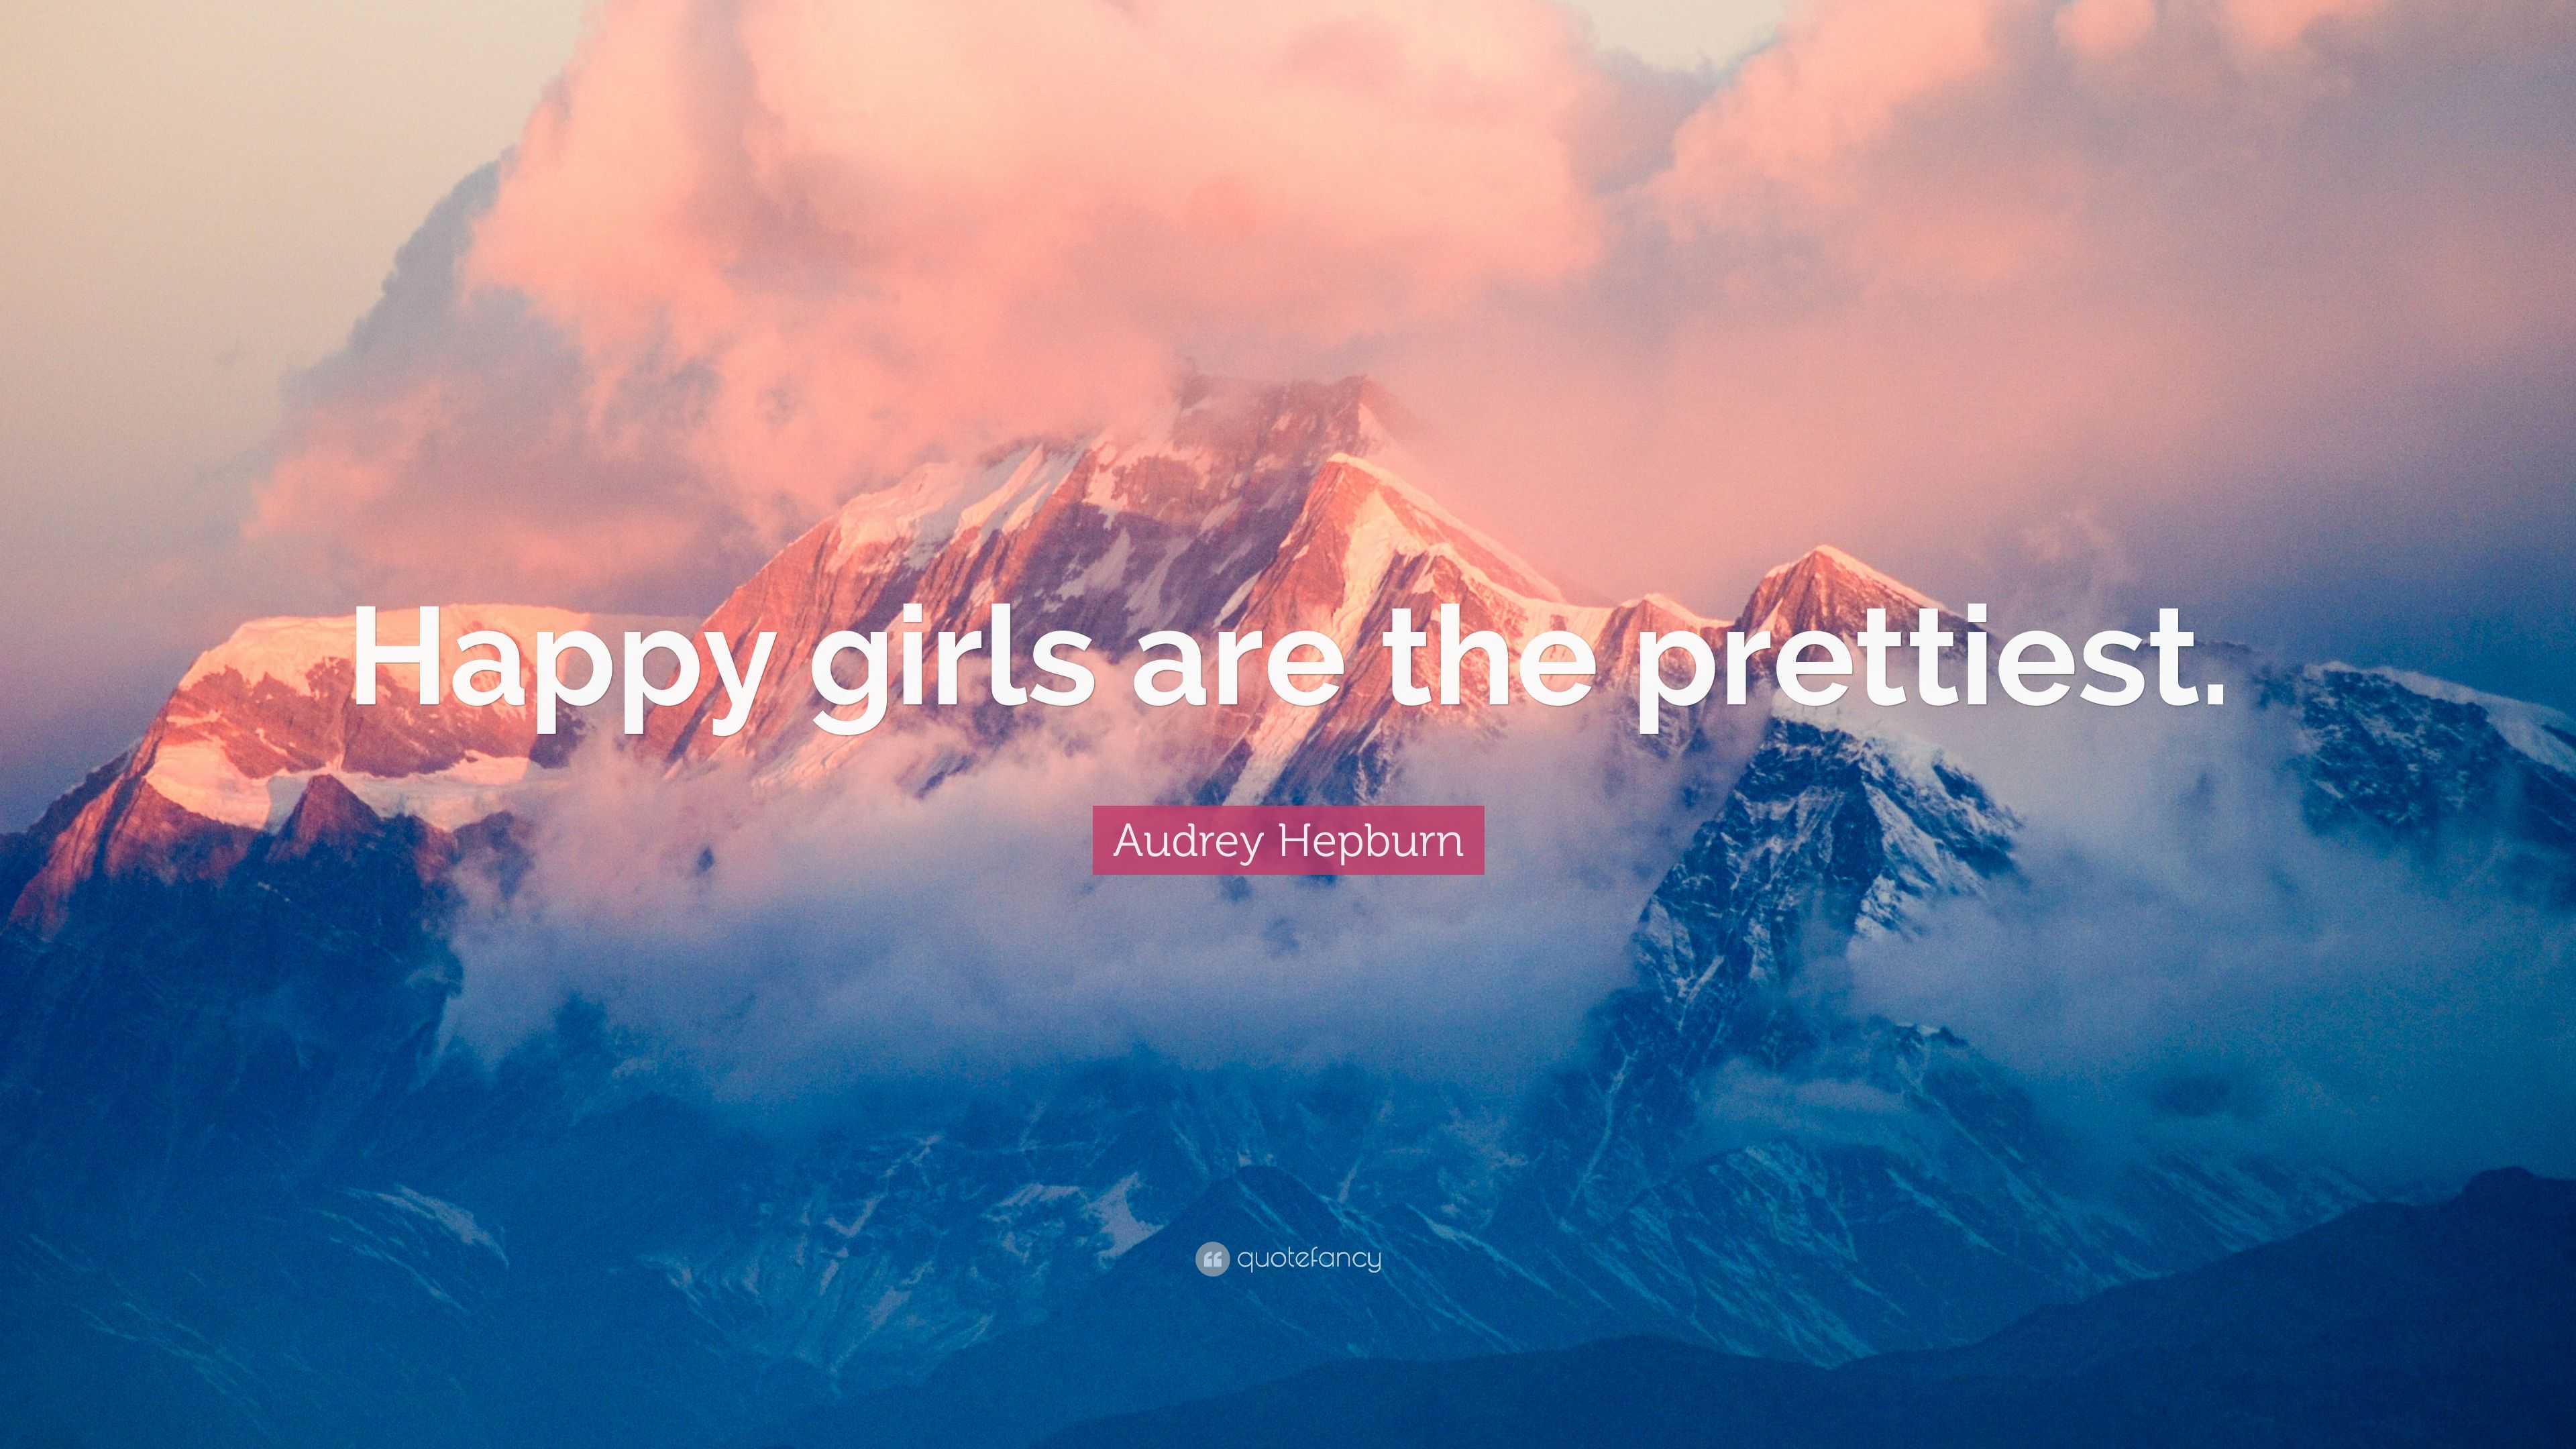 Audrey Hepburn Quote: “Happy girls are the prettiest.”